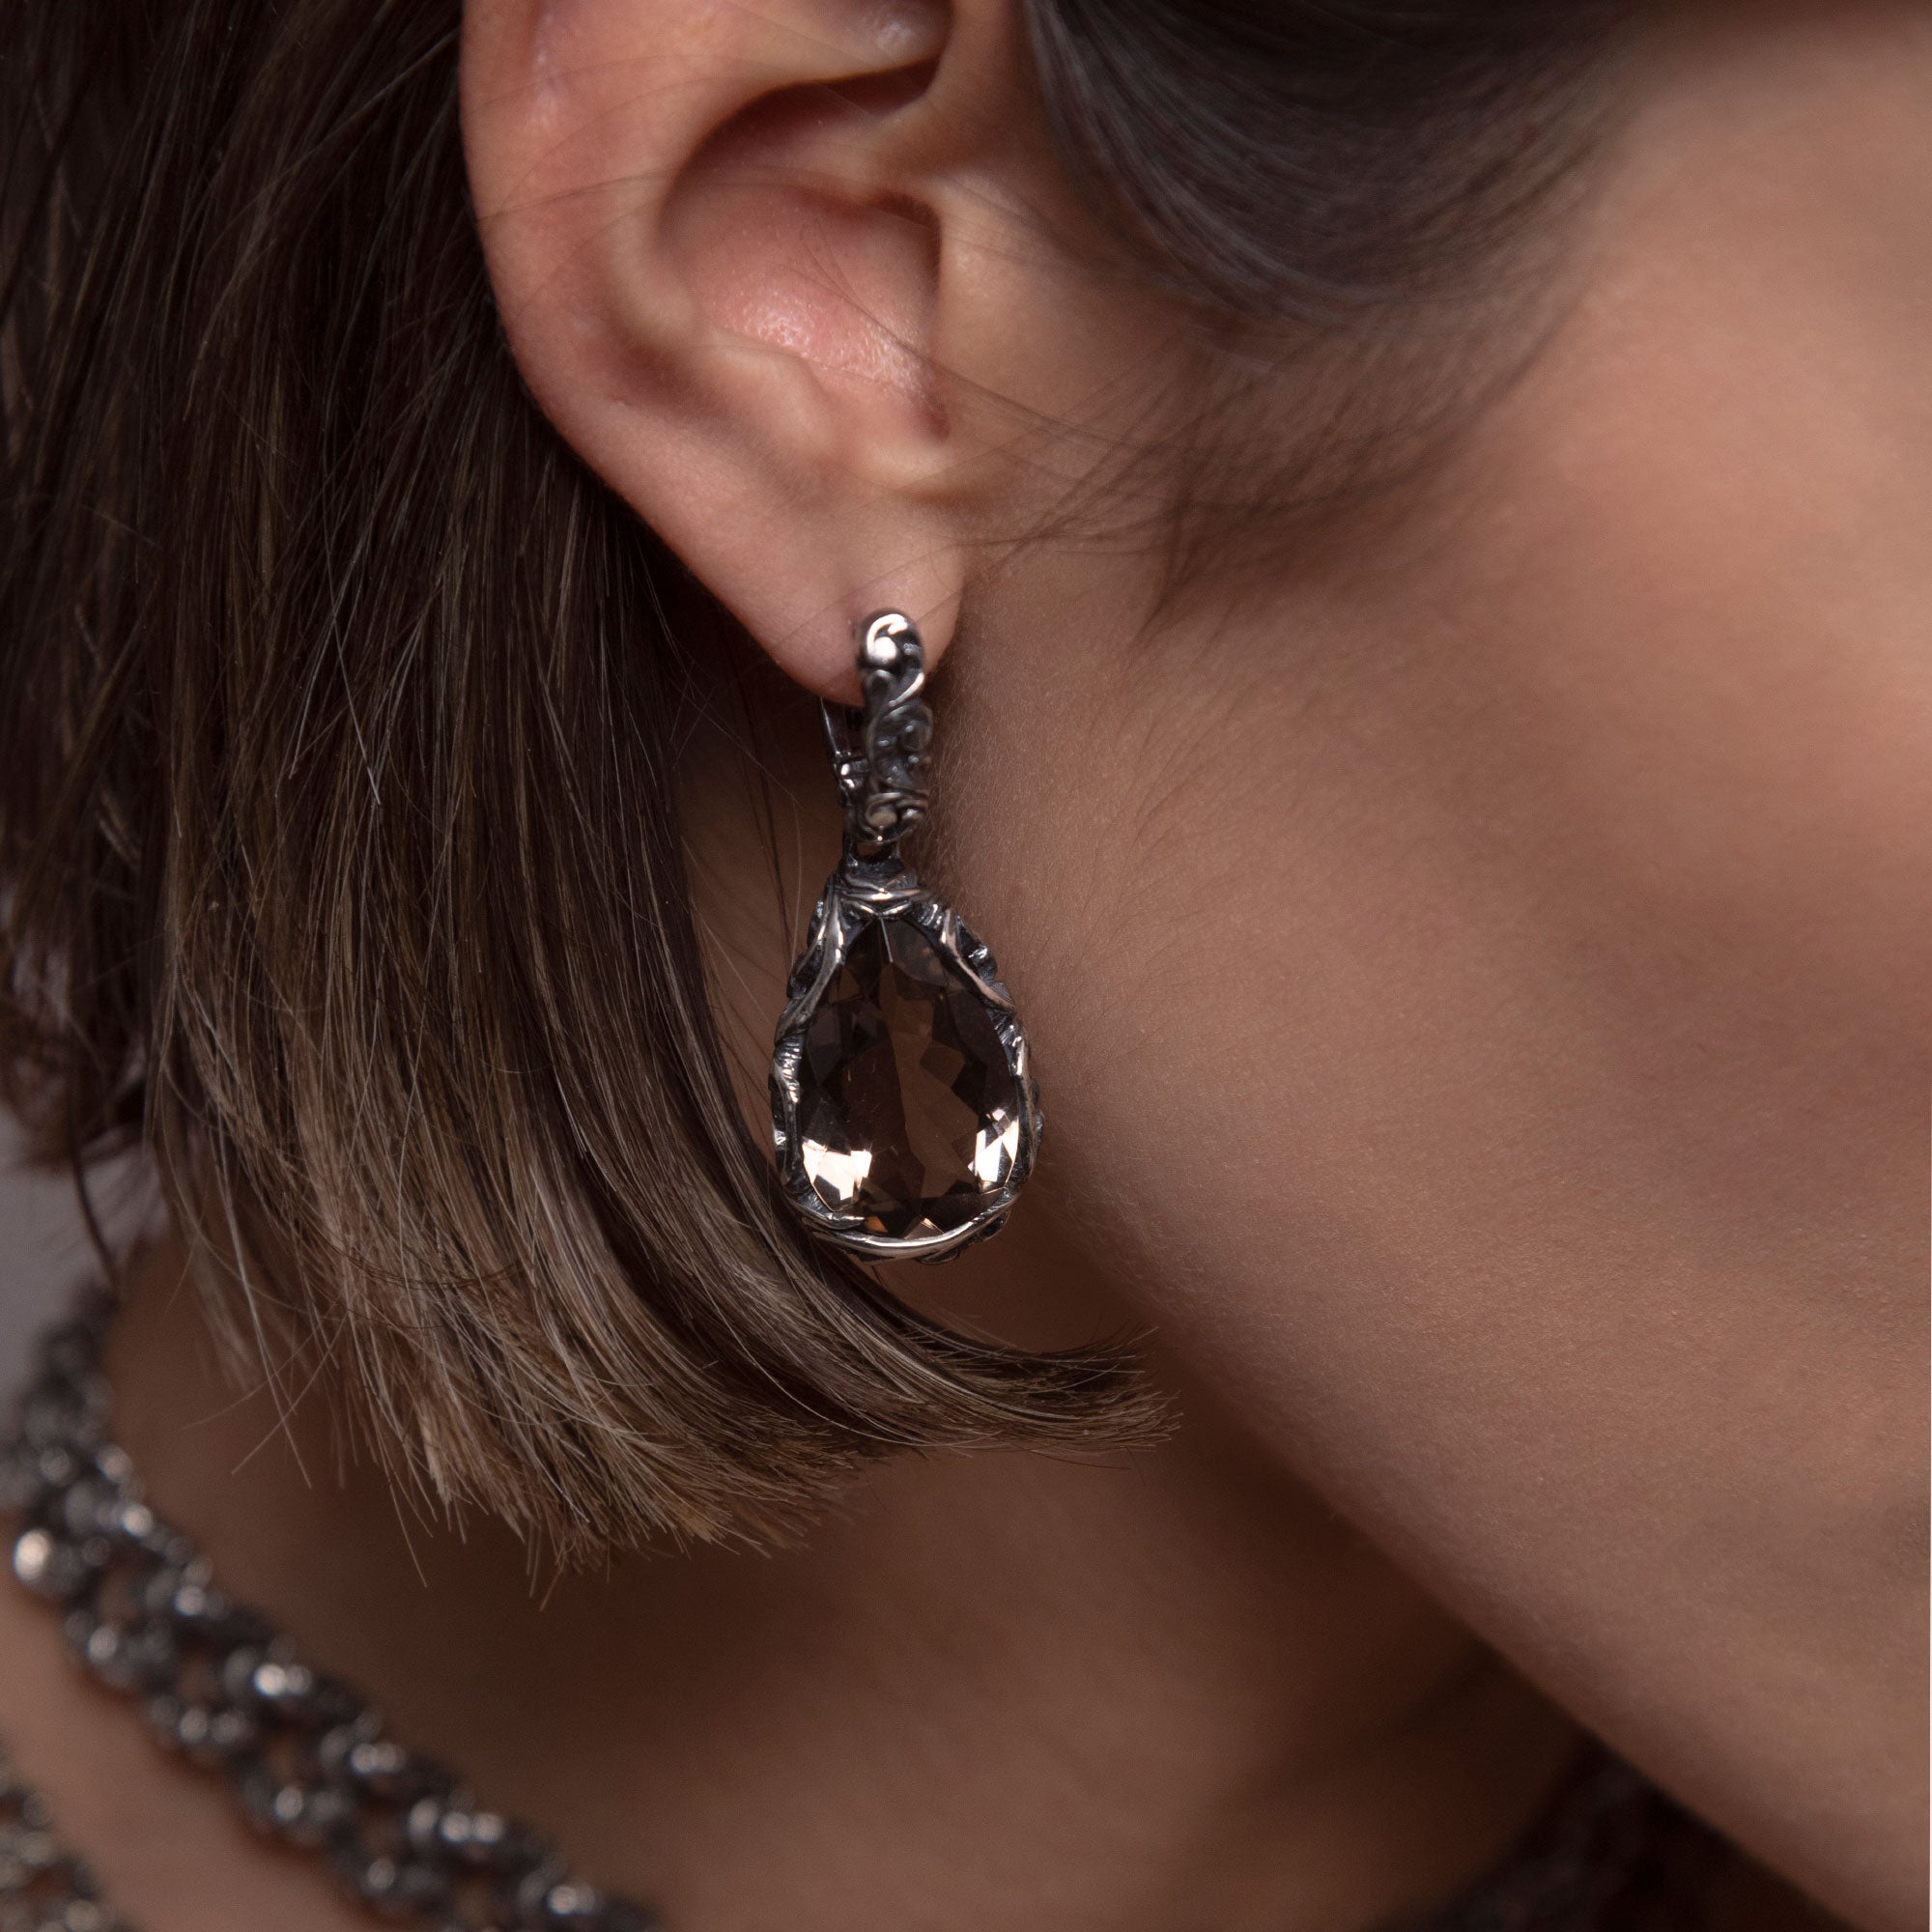 Light point earrings with teardrop stone